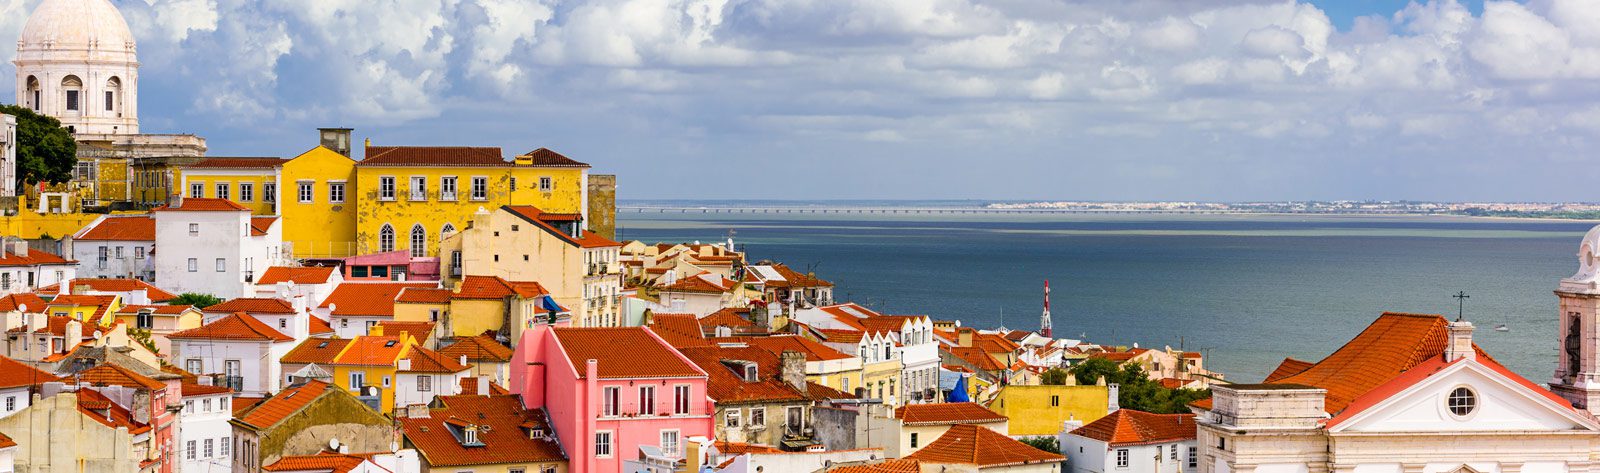 Alfama Lisbon Cityscape